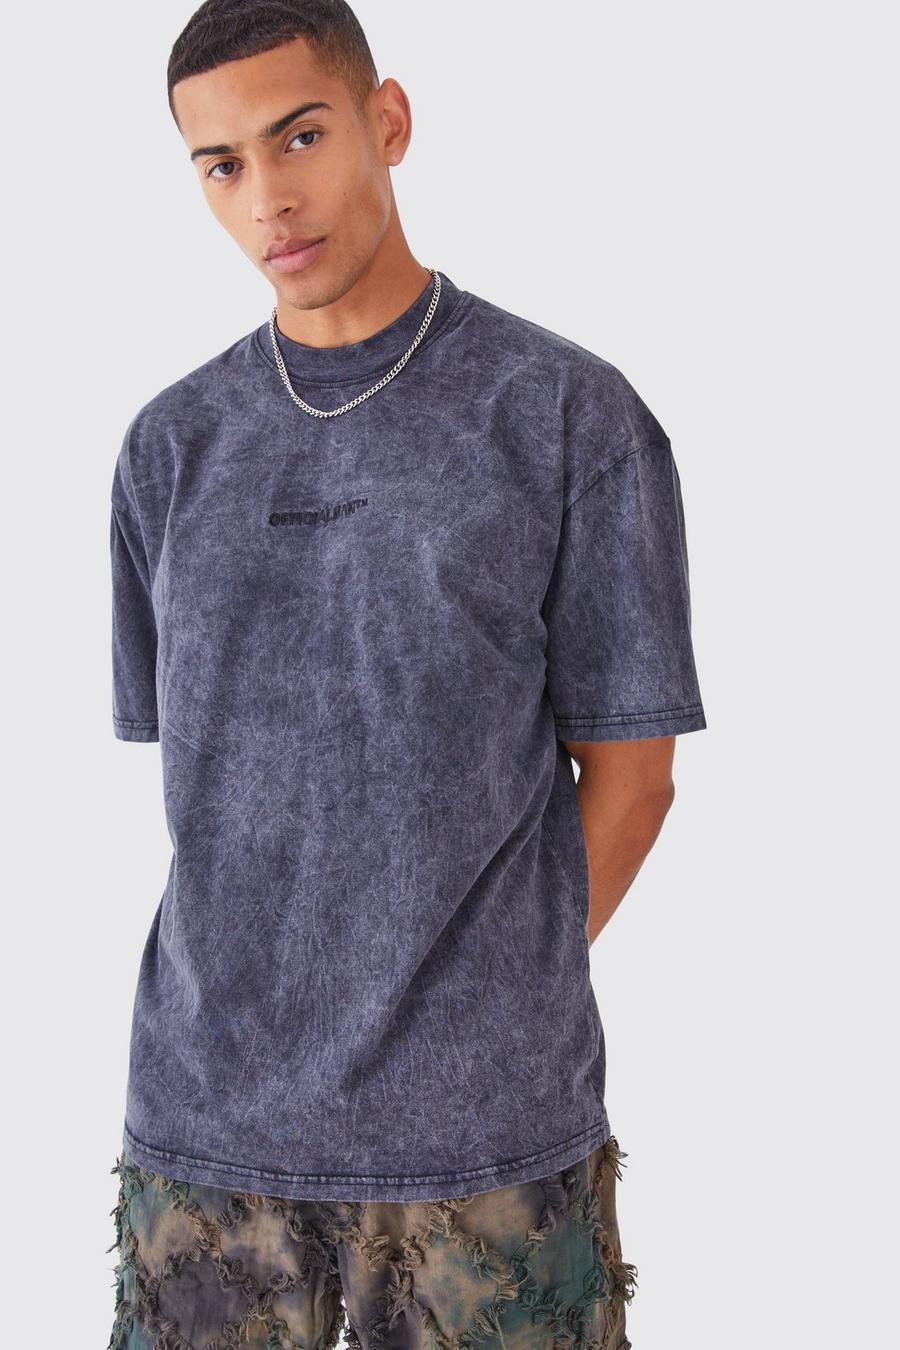 T-shirt oversize délavé - MAN Official, Charcoal